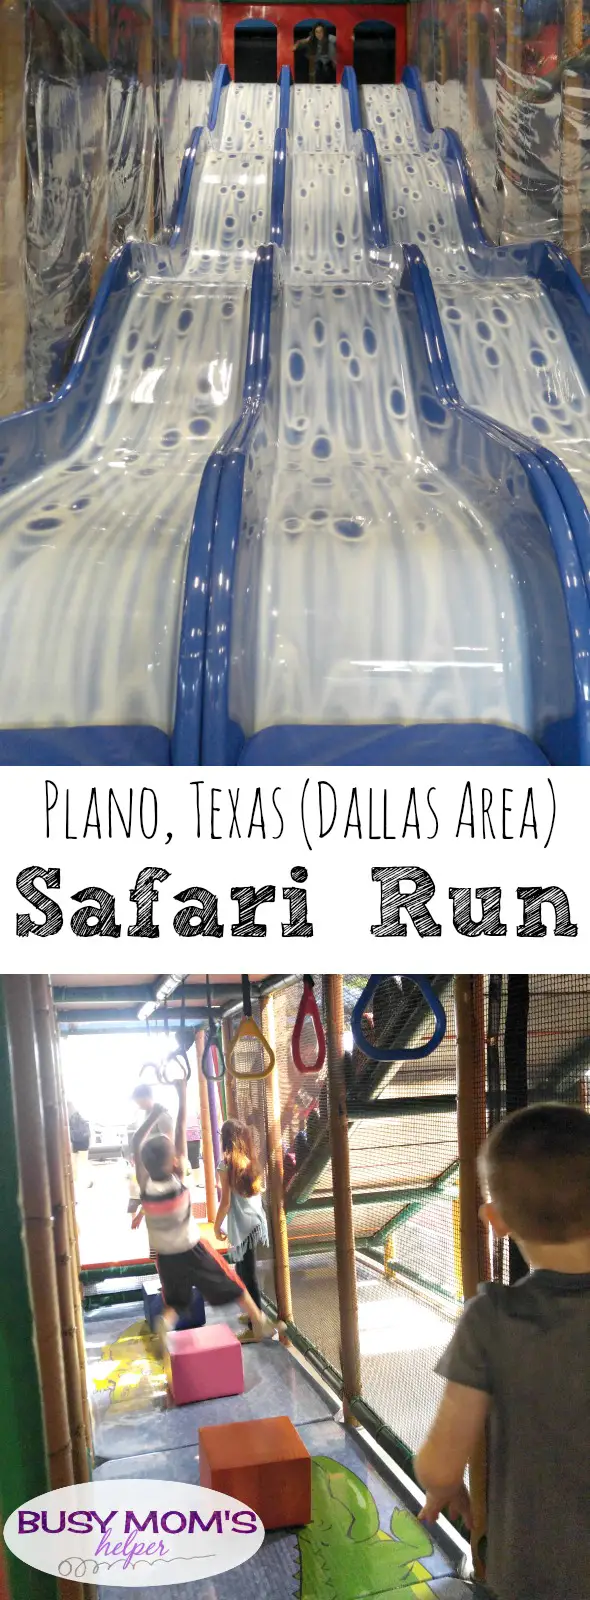 Fun Things to do in Dallas: Safari Run in Plano! By BusyMomsHelper.com #sponsored #SafariRun #IFoundTheFun